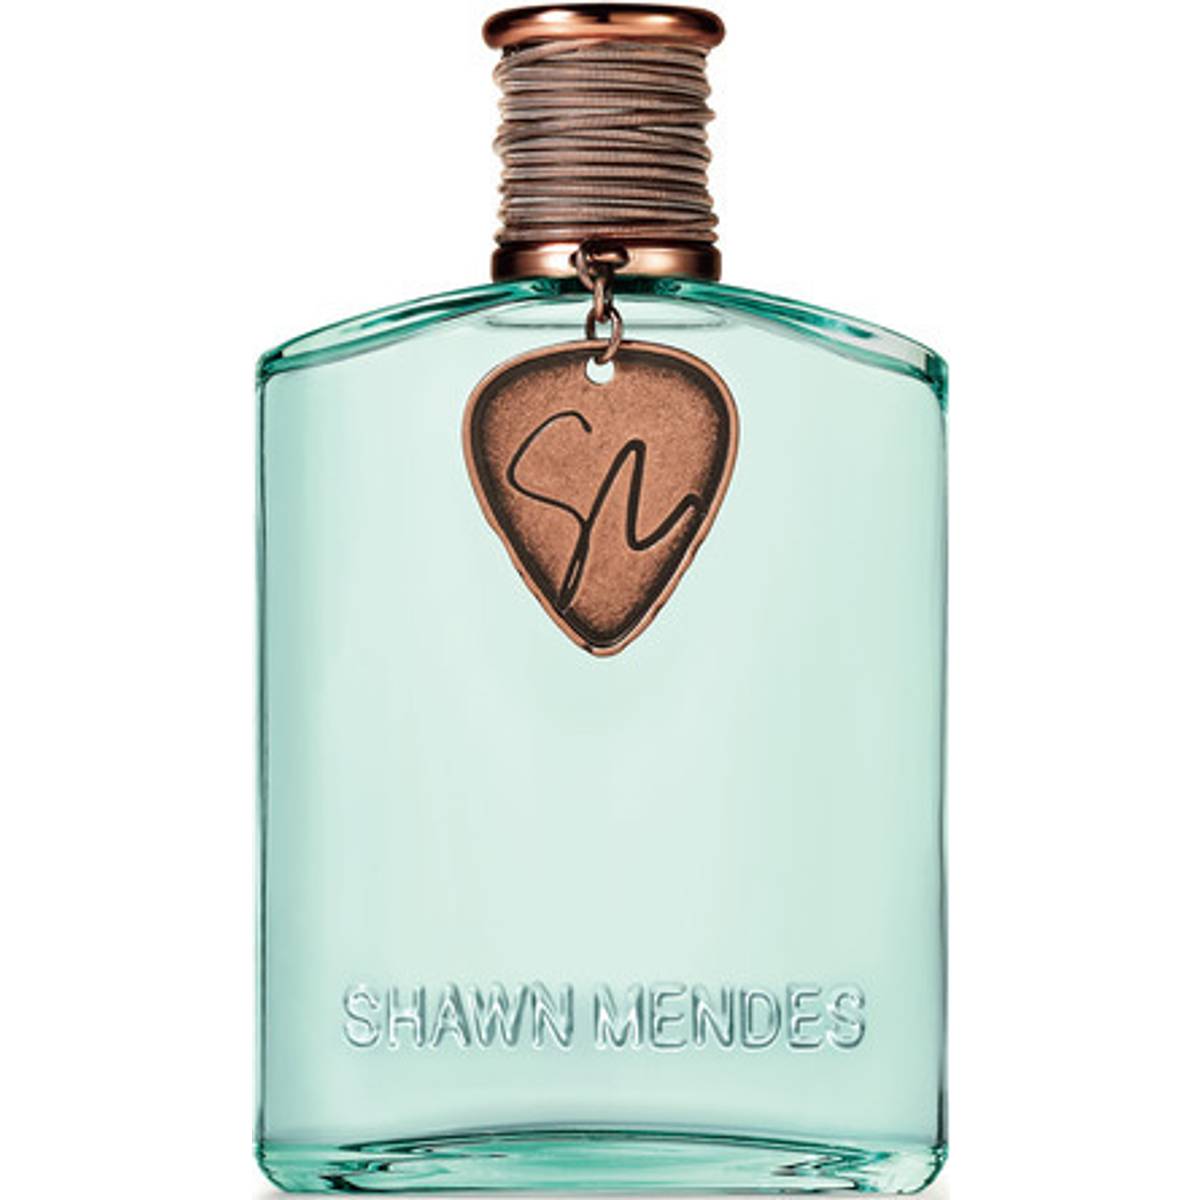 Shawn Mendes parfume Se tilbud og køb hos Matas